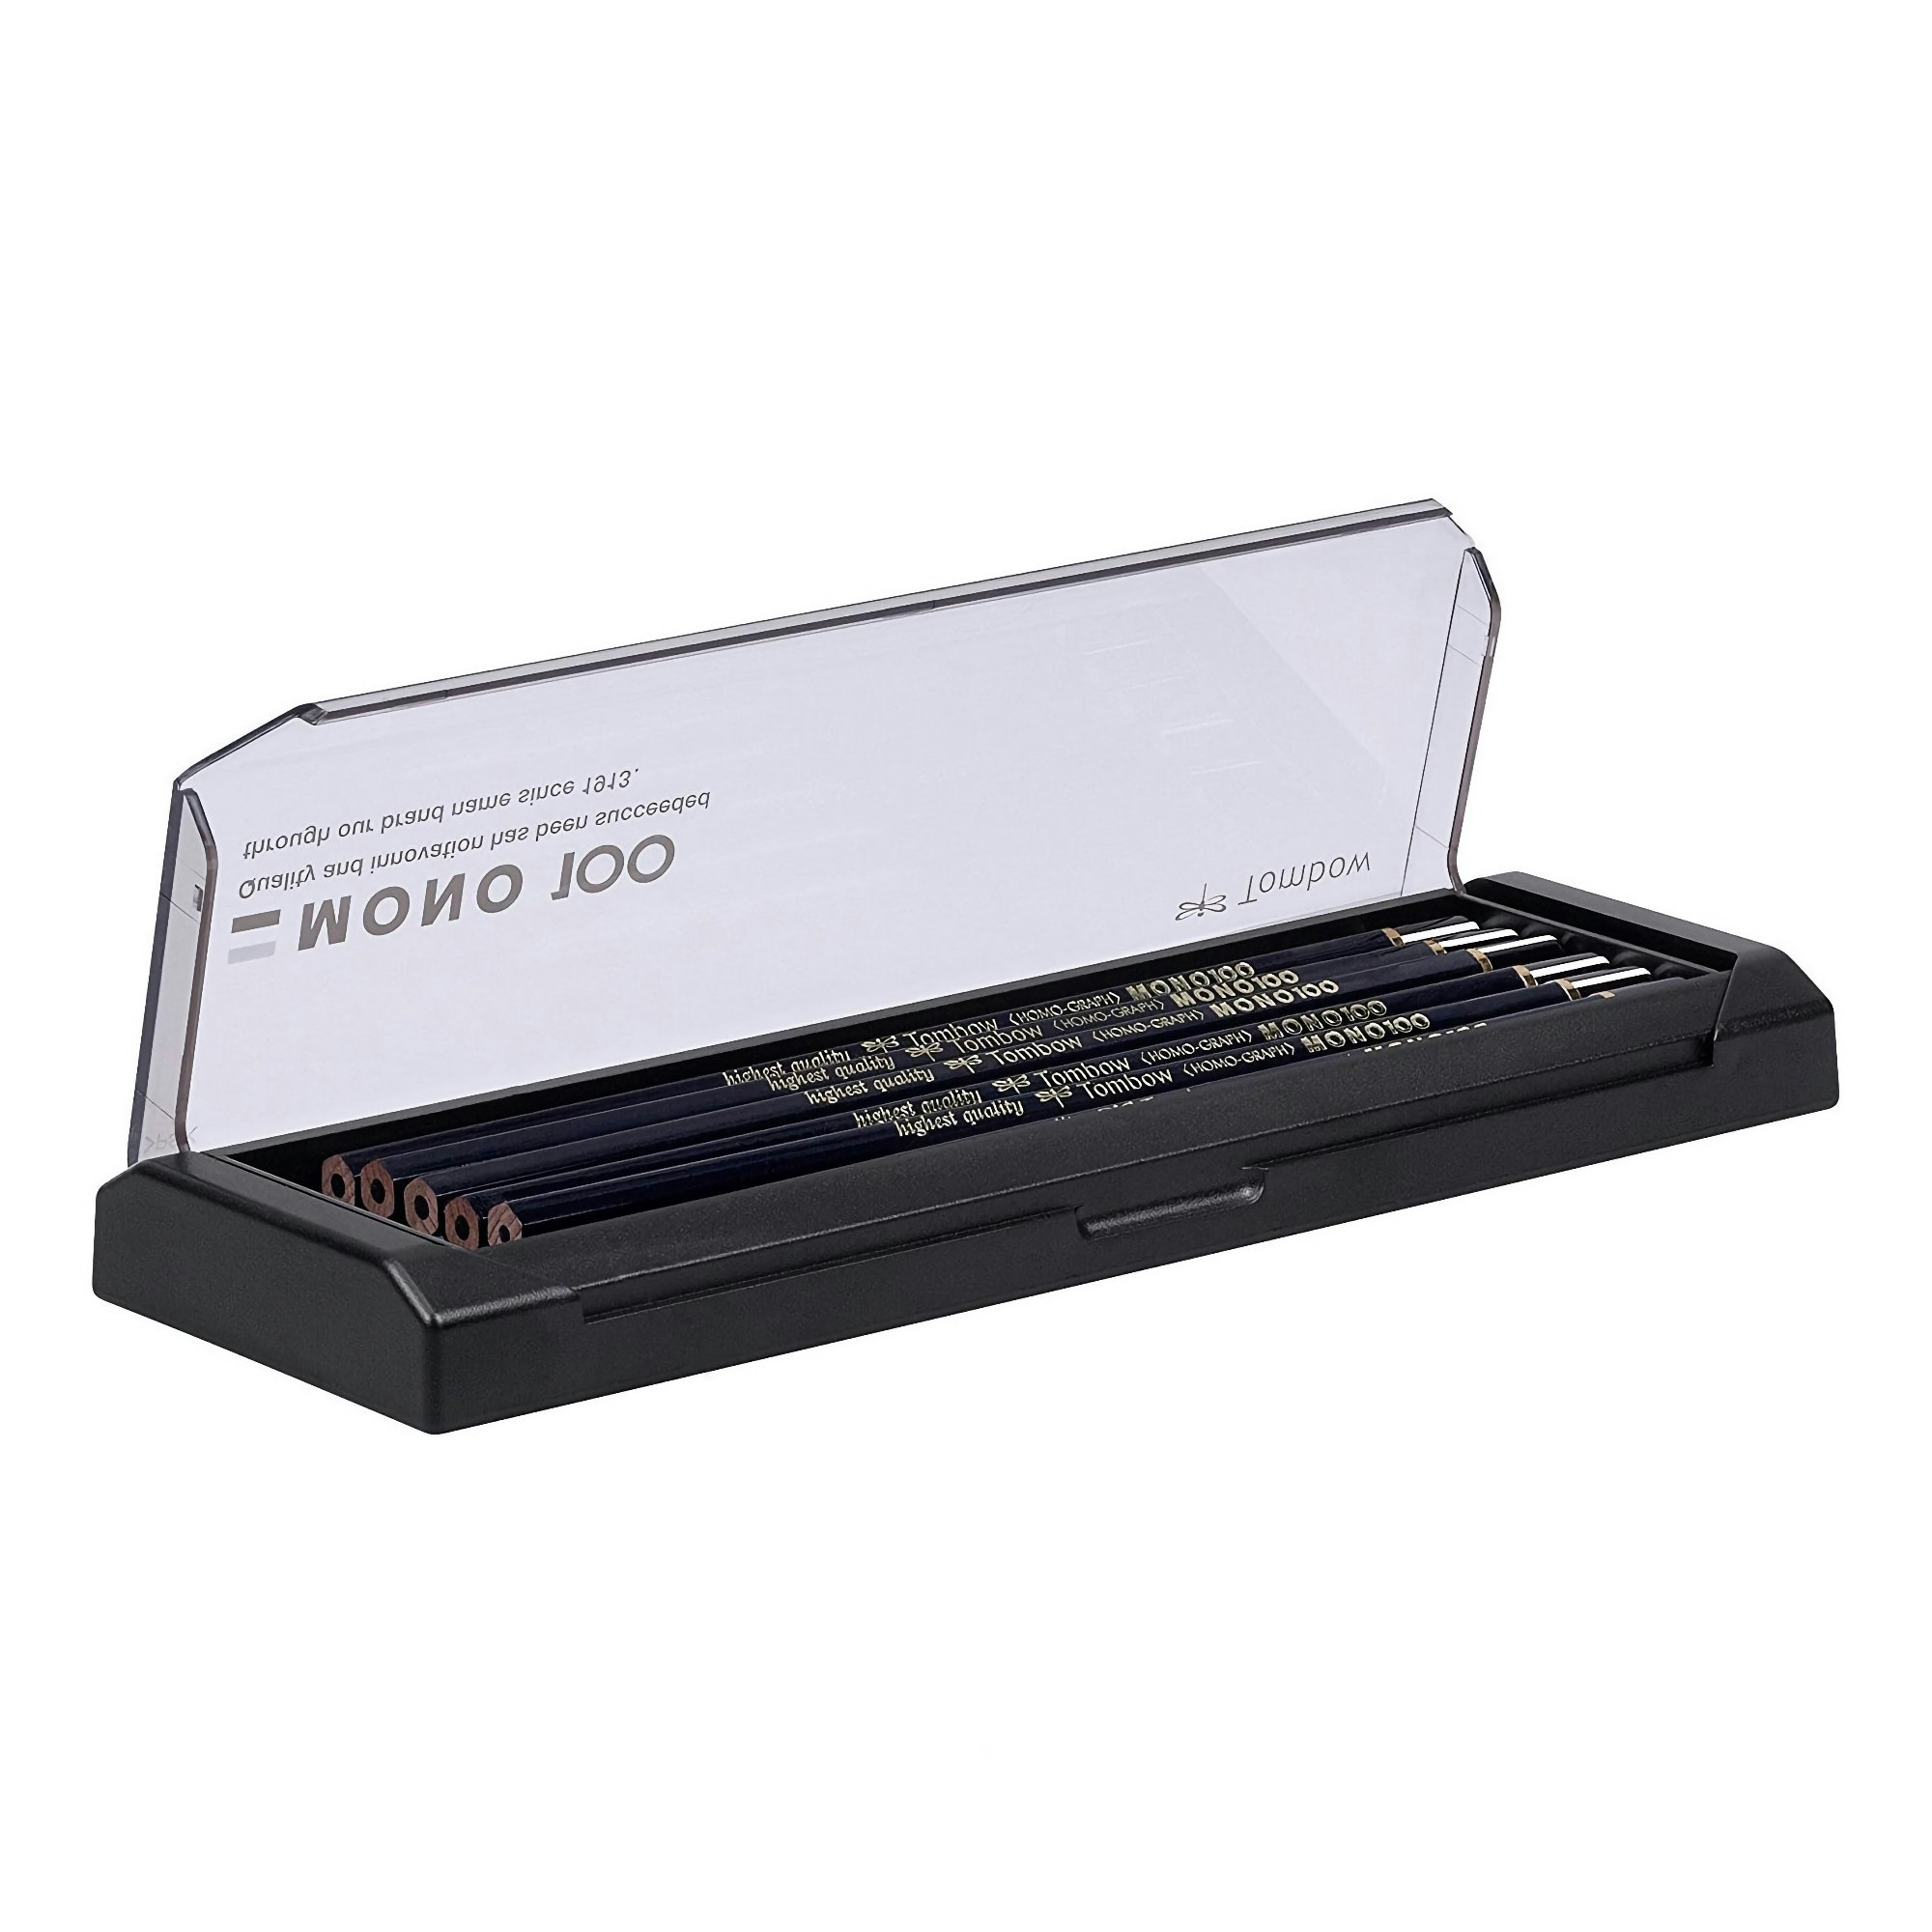 Tombow Mono 100 Pencil – 5B – set of 12